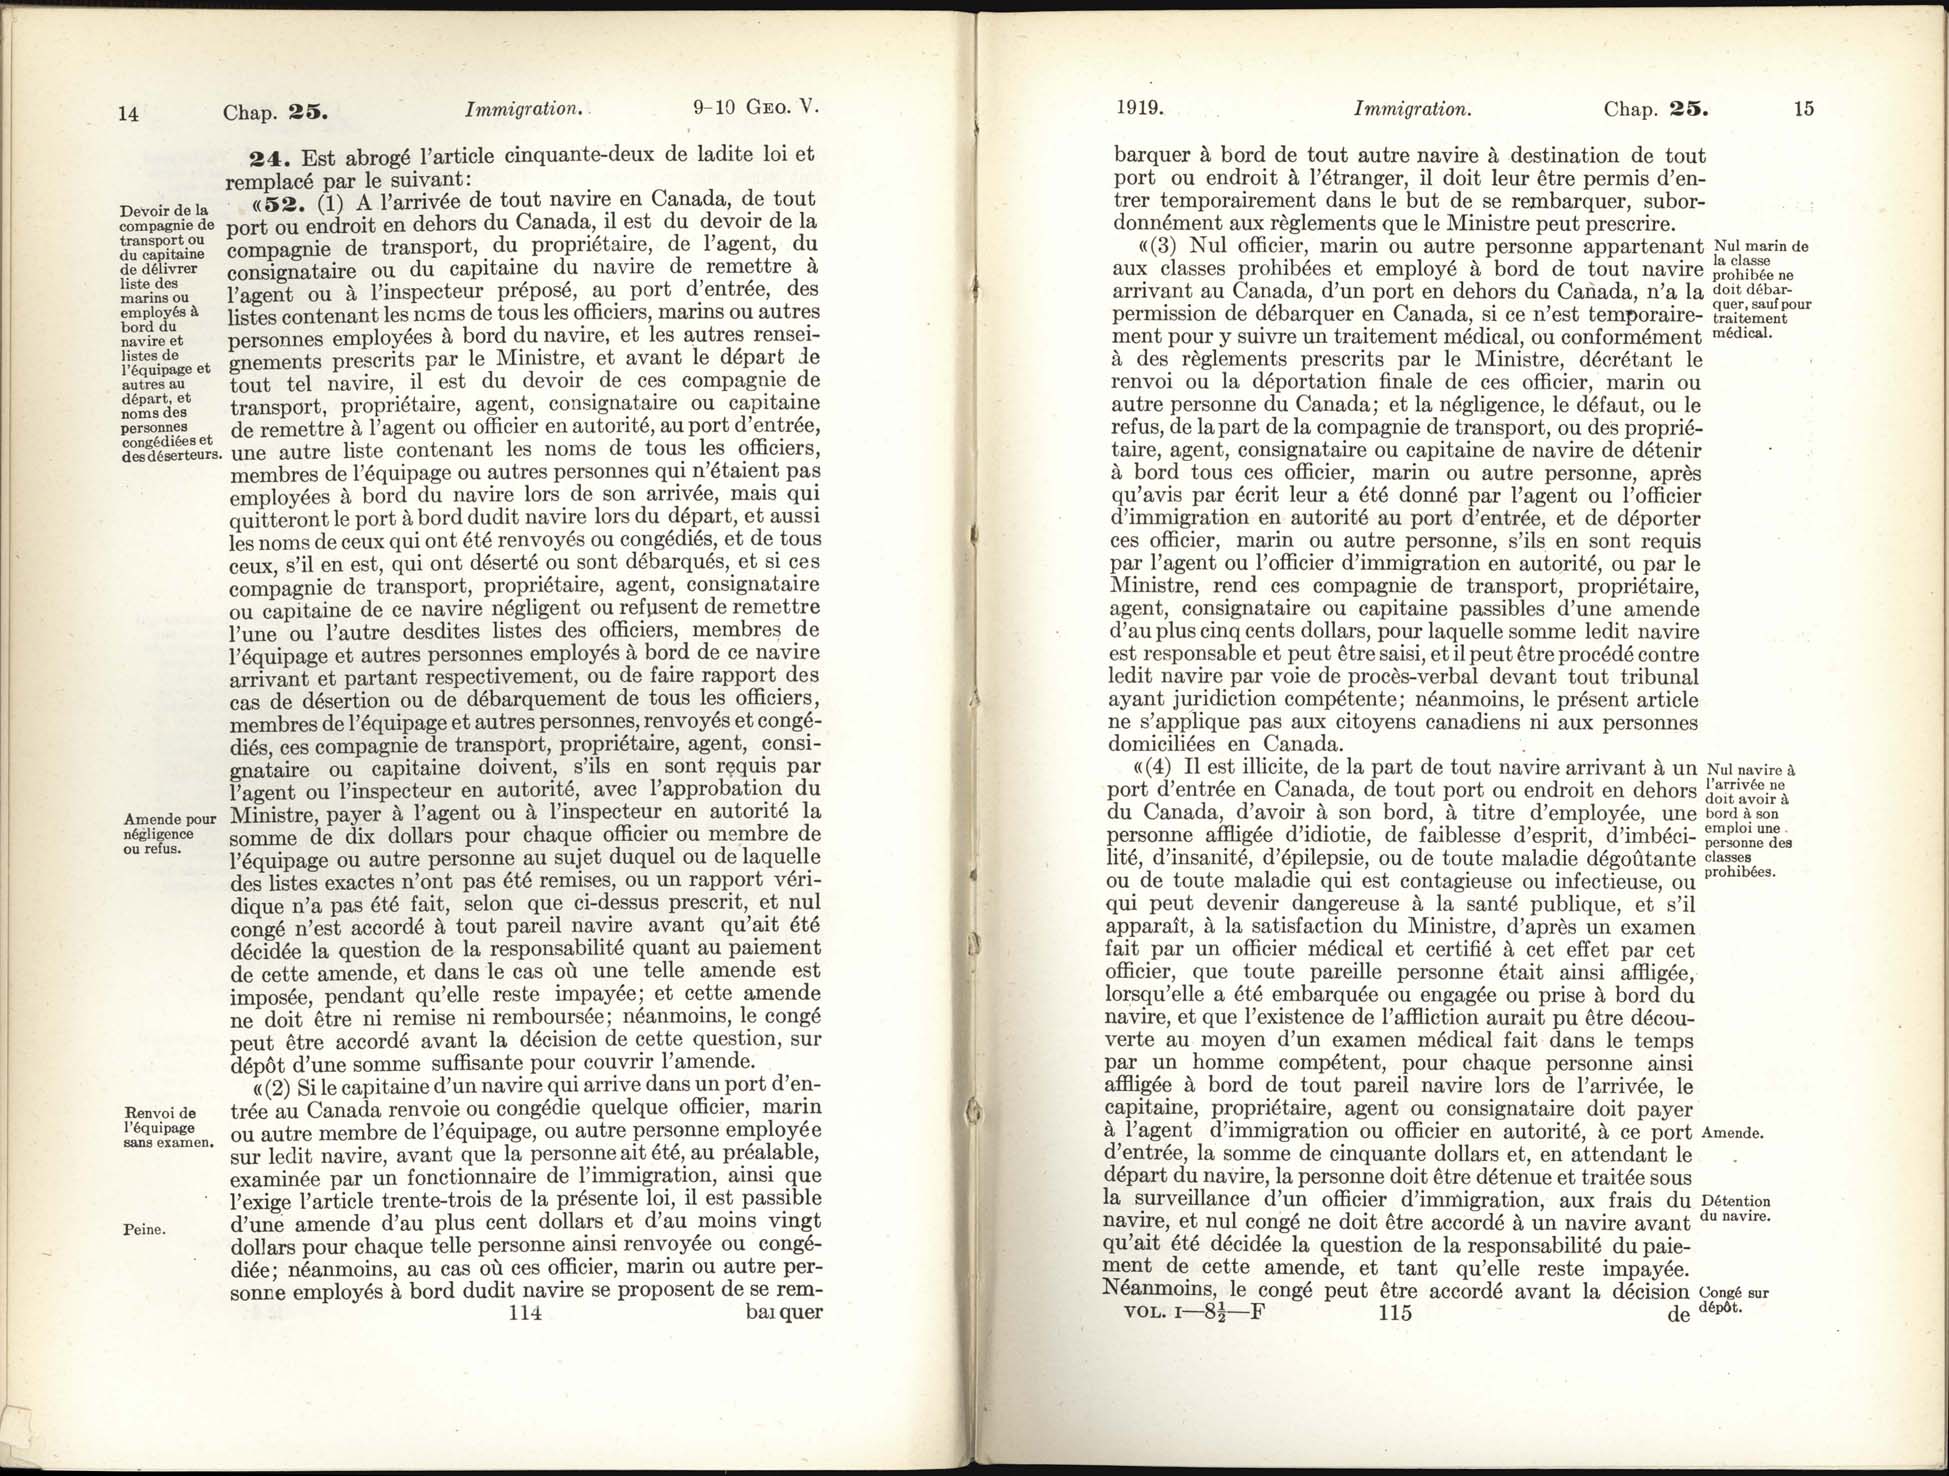 Page 114, 115 Loi de l’immigration amendement, 1919